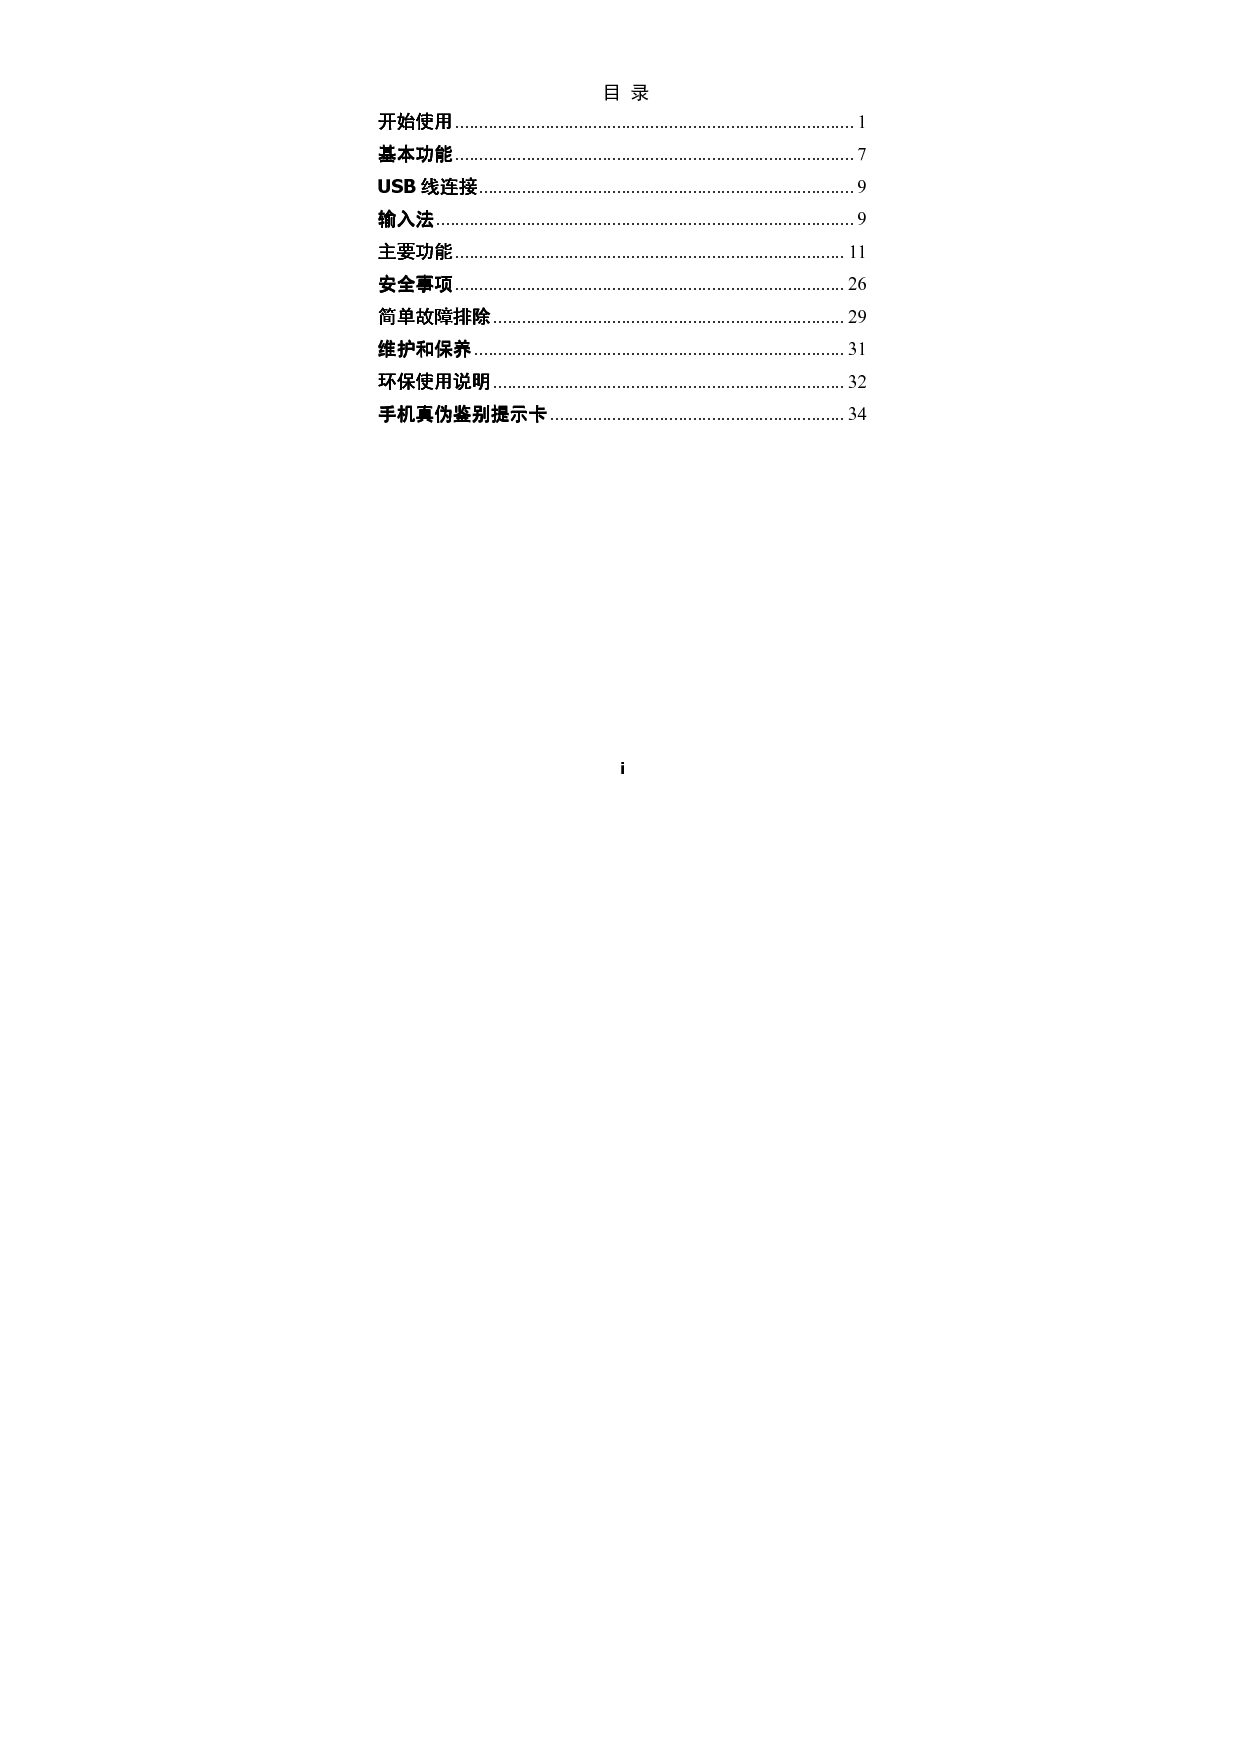 海信 Hisense HS-T11 用户指南 第1页